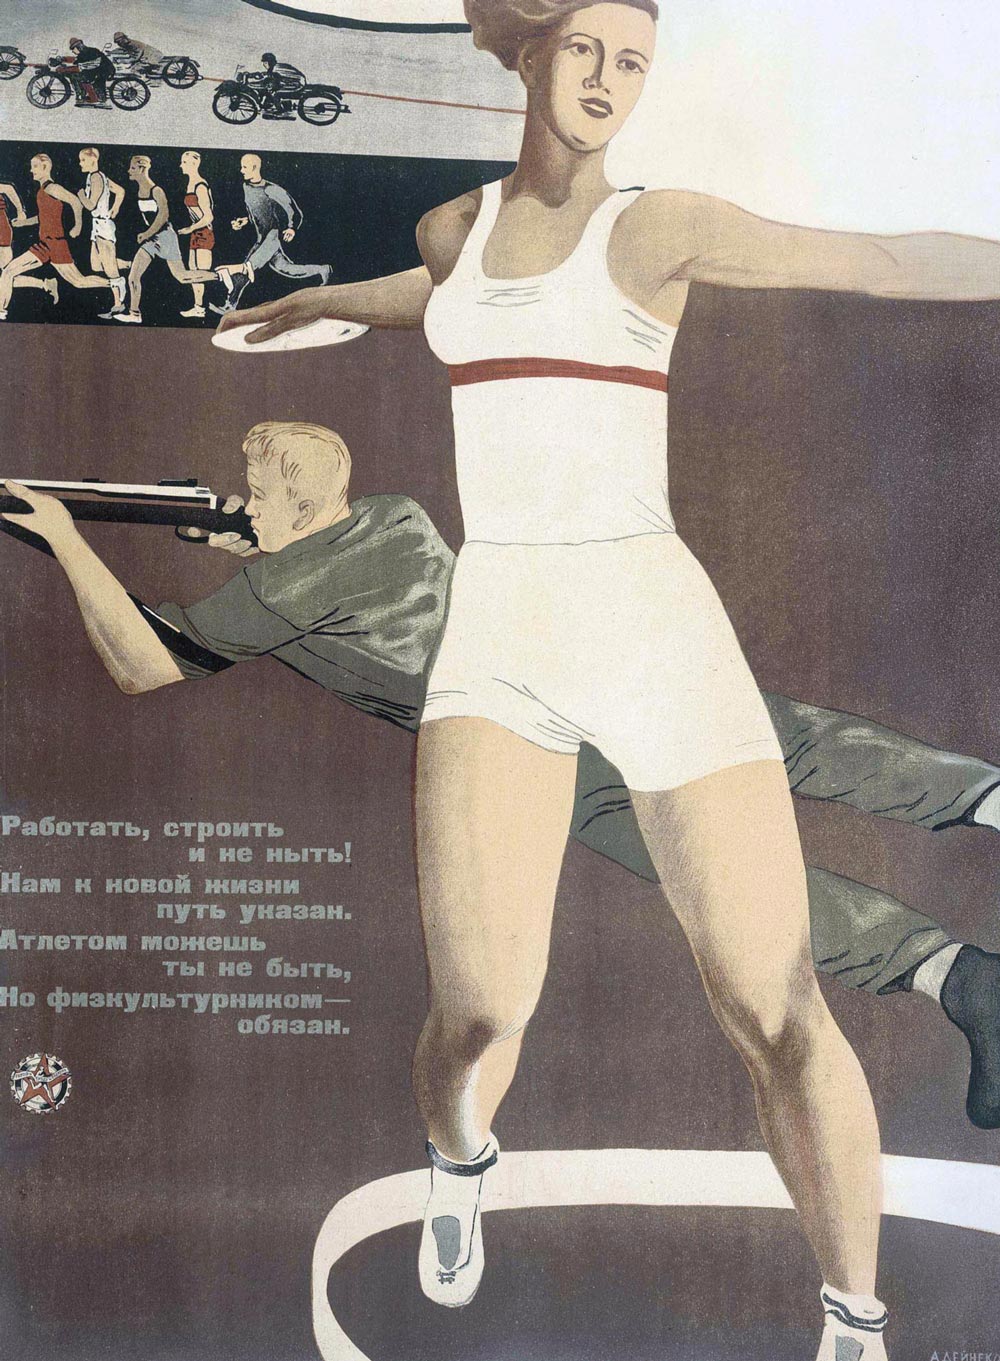 Aleksandr Deineka, Travailler, construire et ne pas se lamenter!, 1933